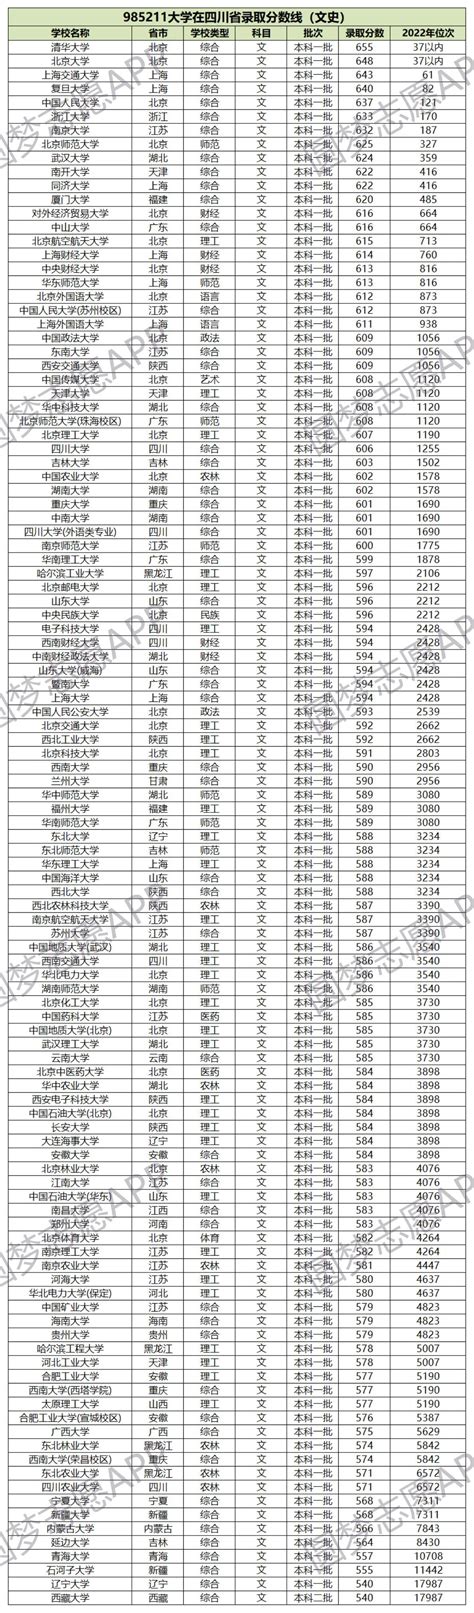 江汉大学历年高考录取分数线(含2017-2019年)